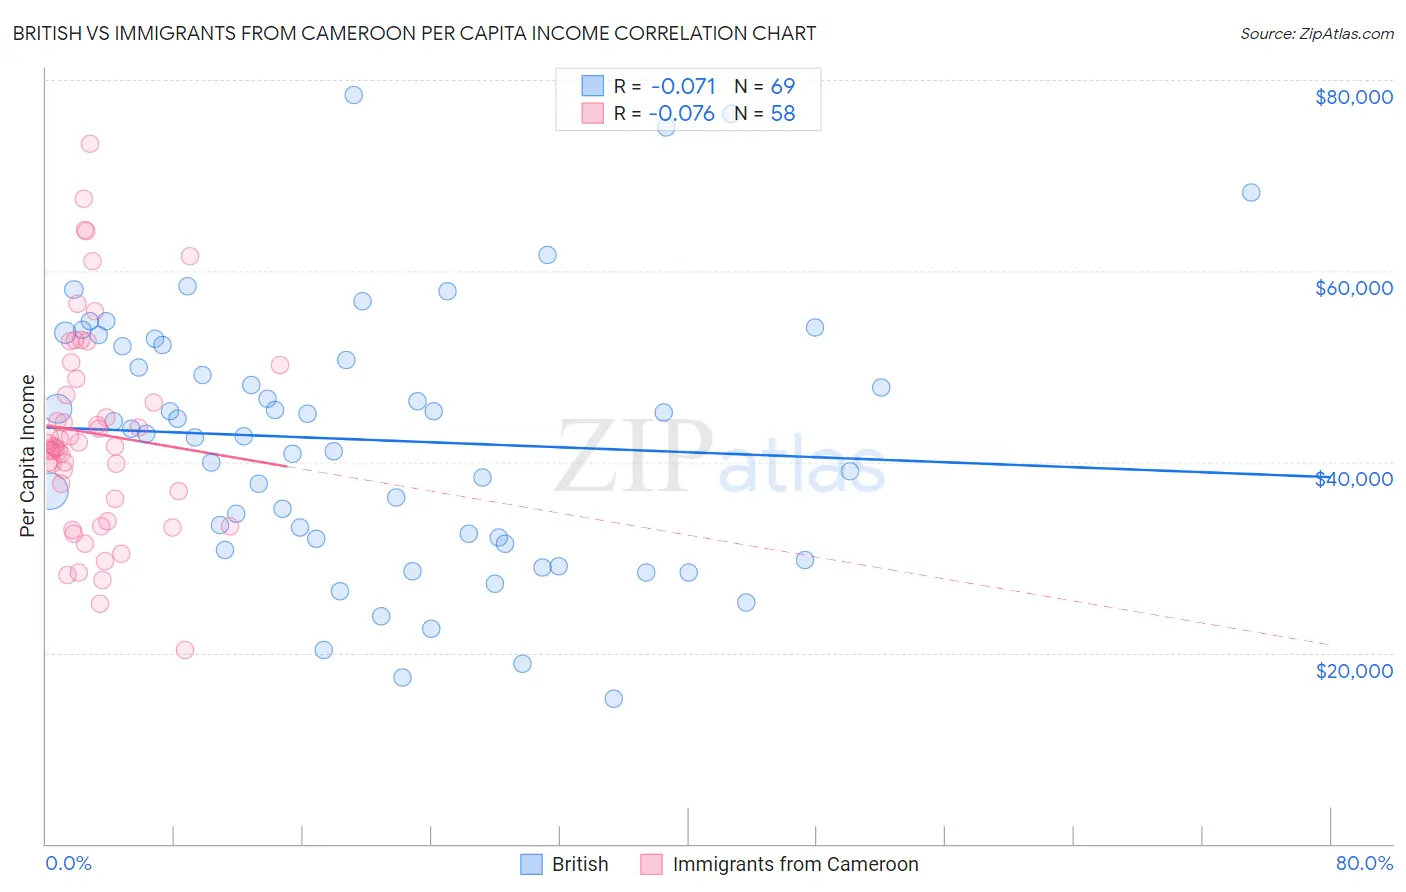 British vs Immigrants from Cameroon Per Capita Income